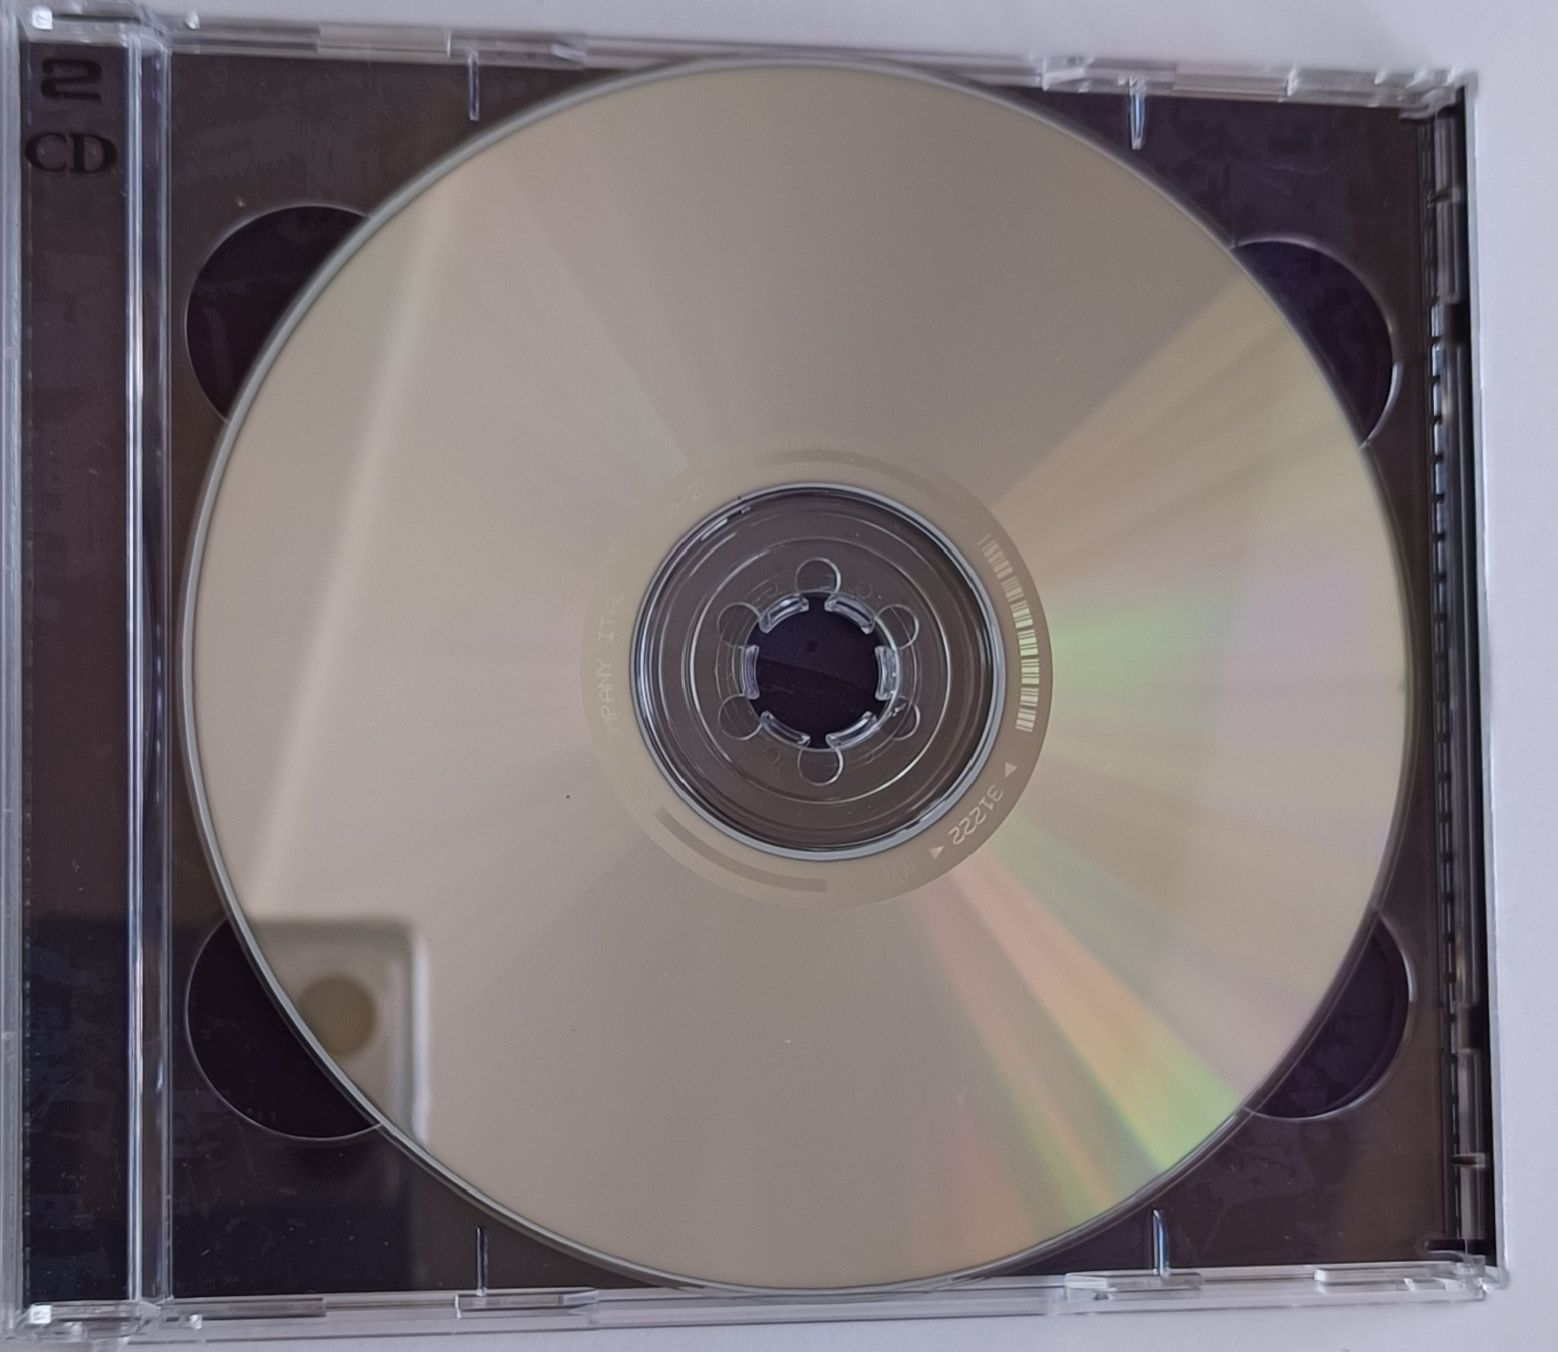 Il Trovatore Giuseppe Verdi 2CD 2002r